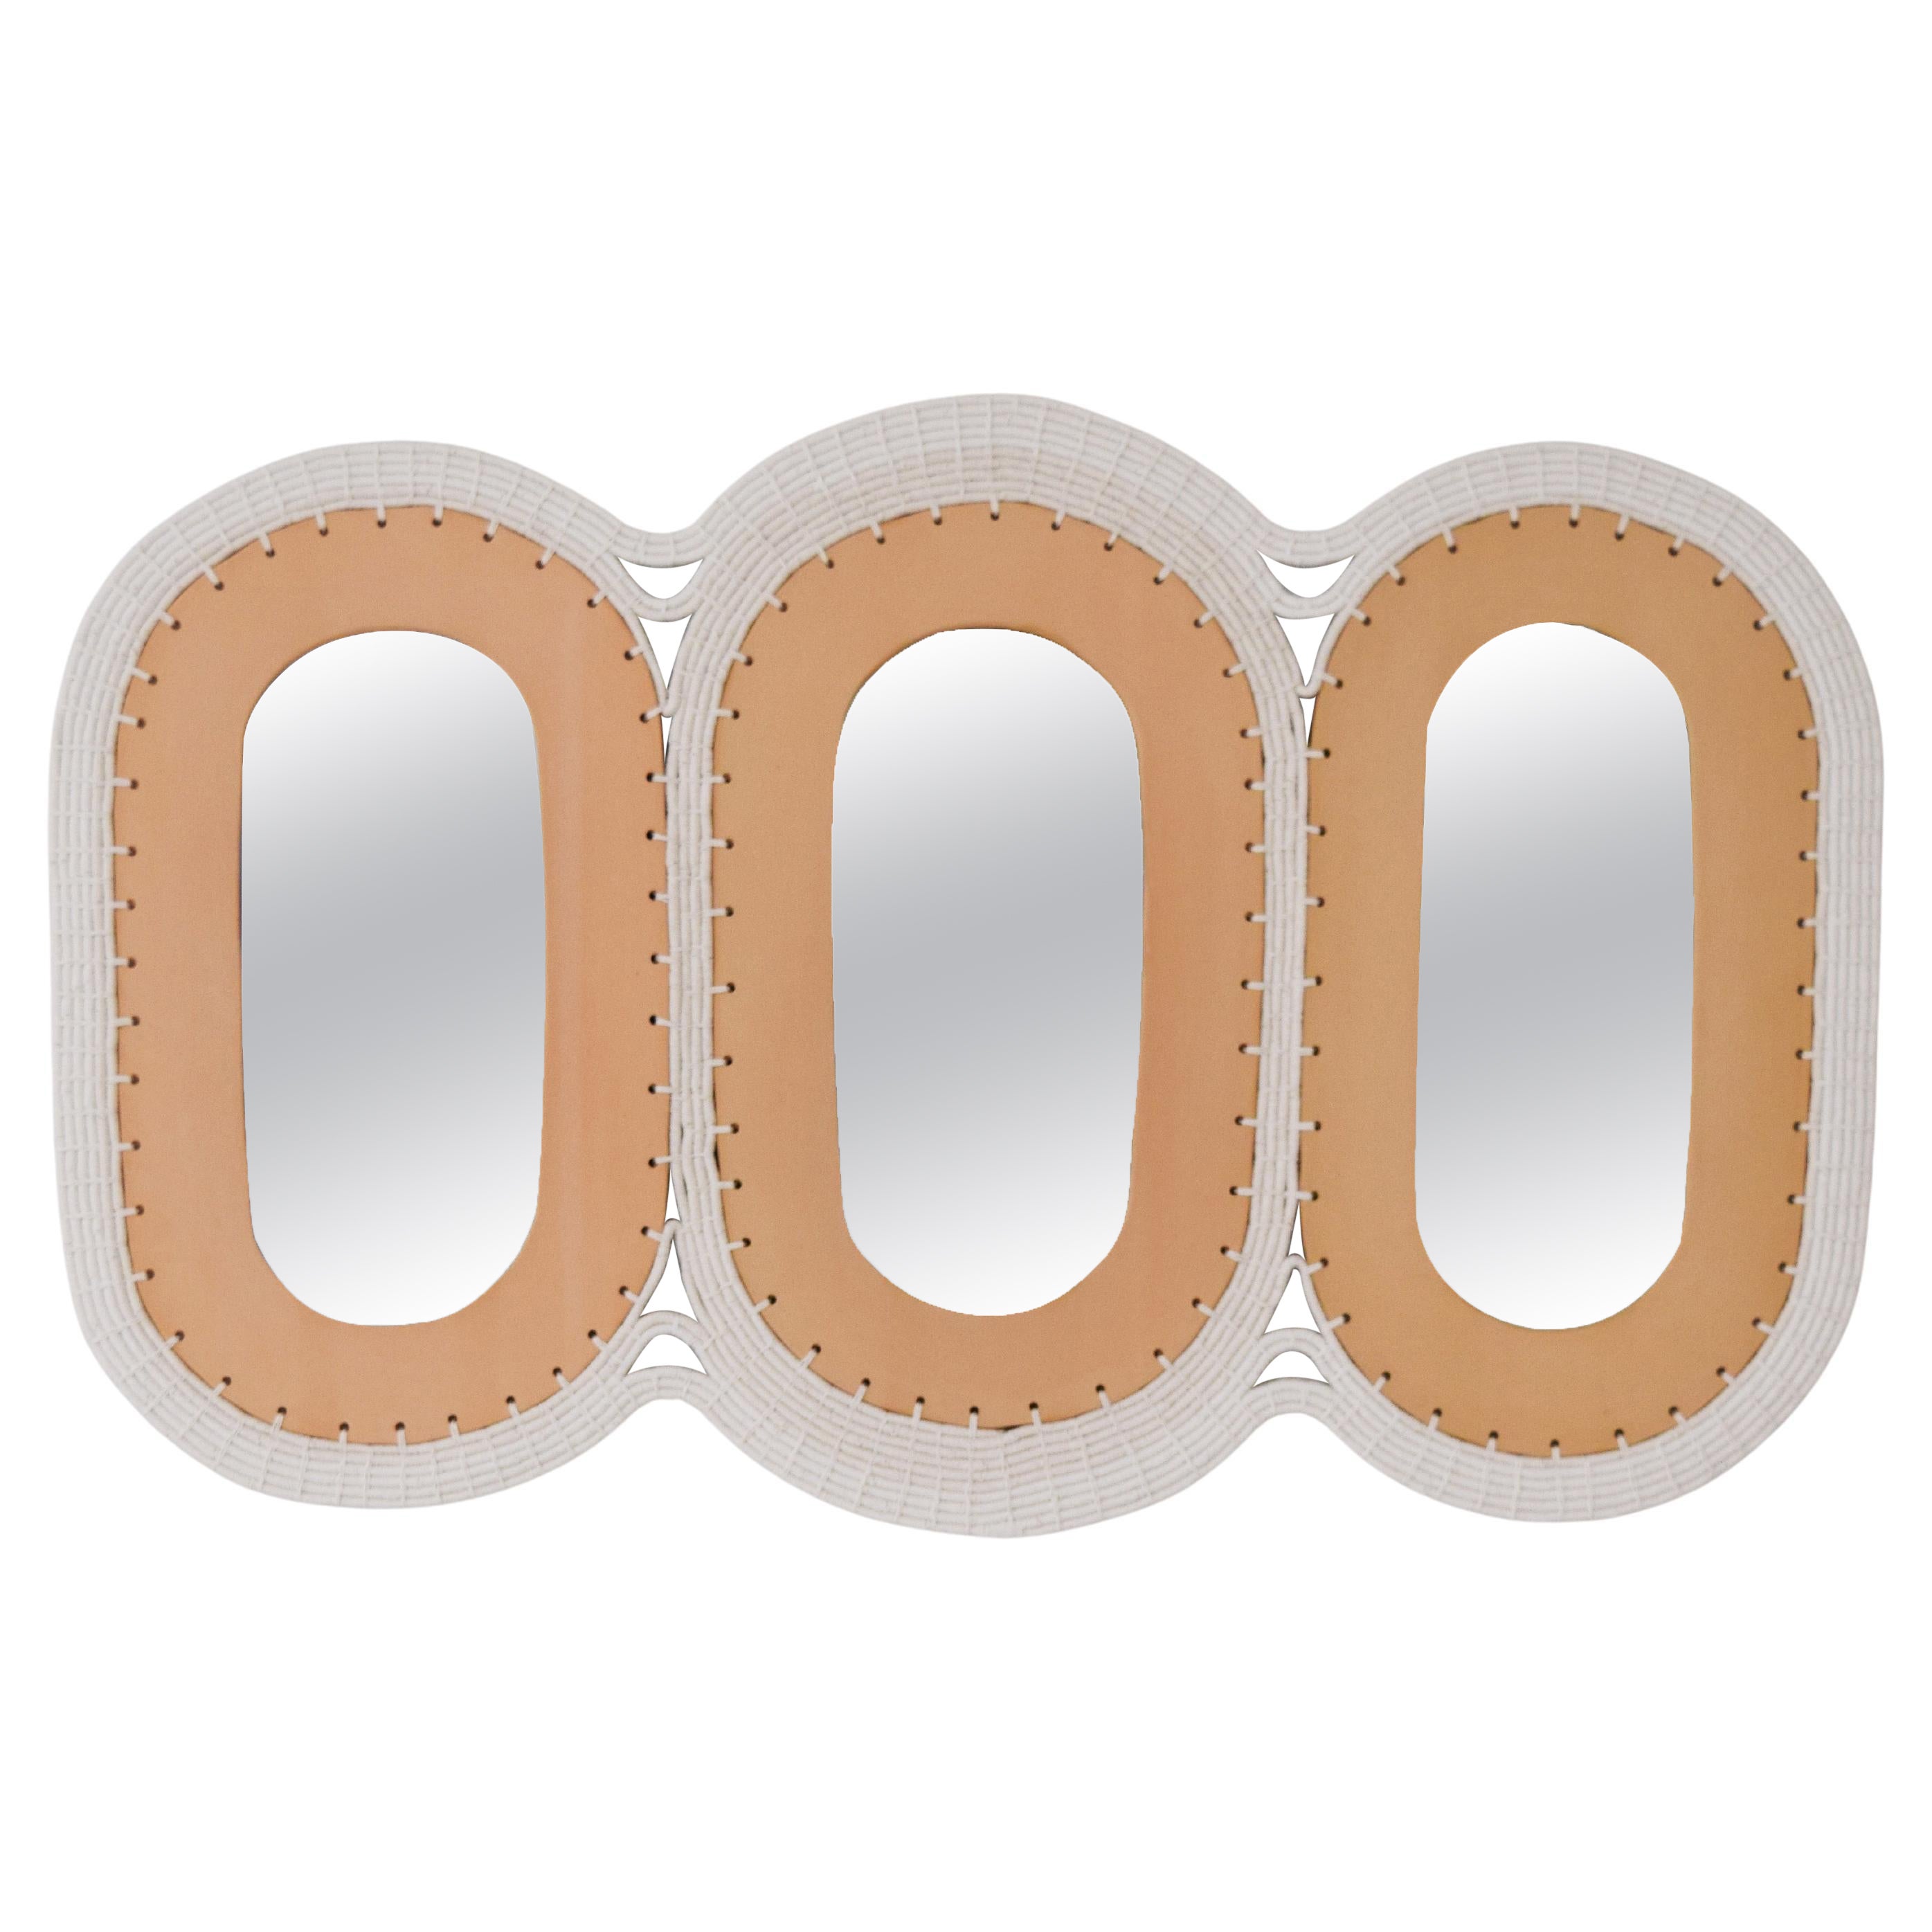 Miroir fait main #801, céramique avec contour en coton tissé, options personnalisées